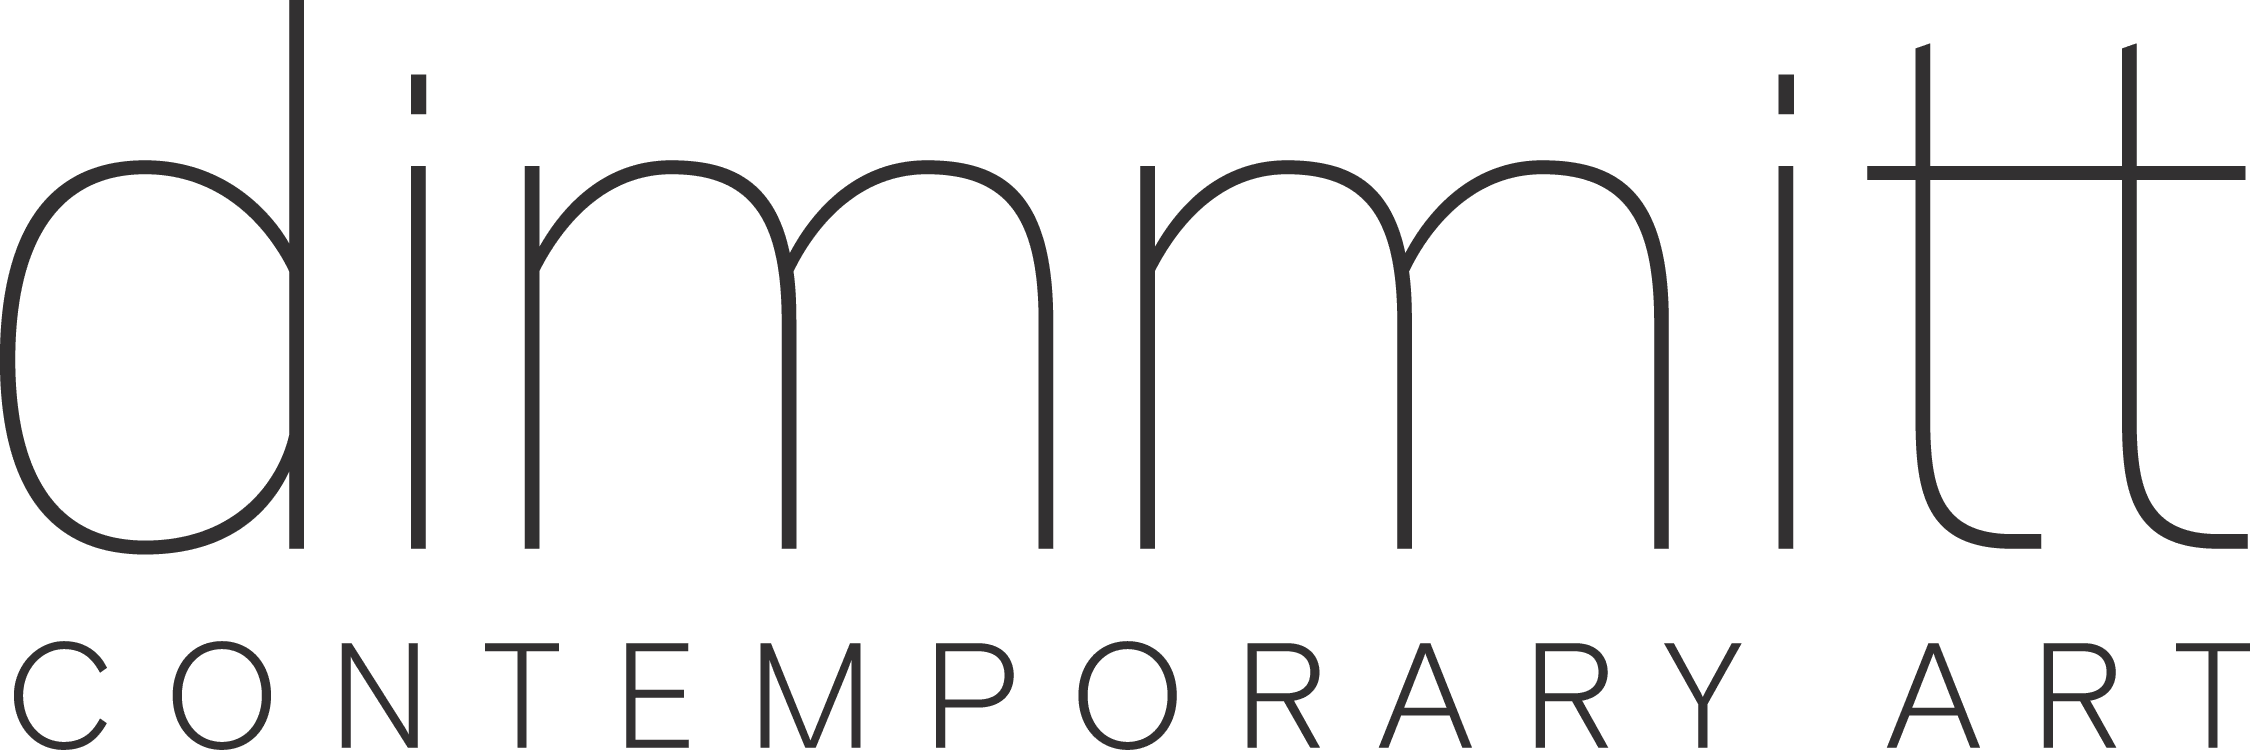 Dimmitt Contemporary Art company logo